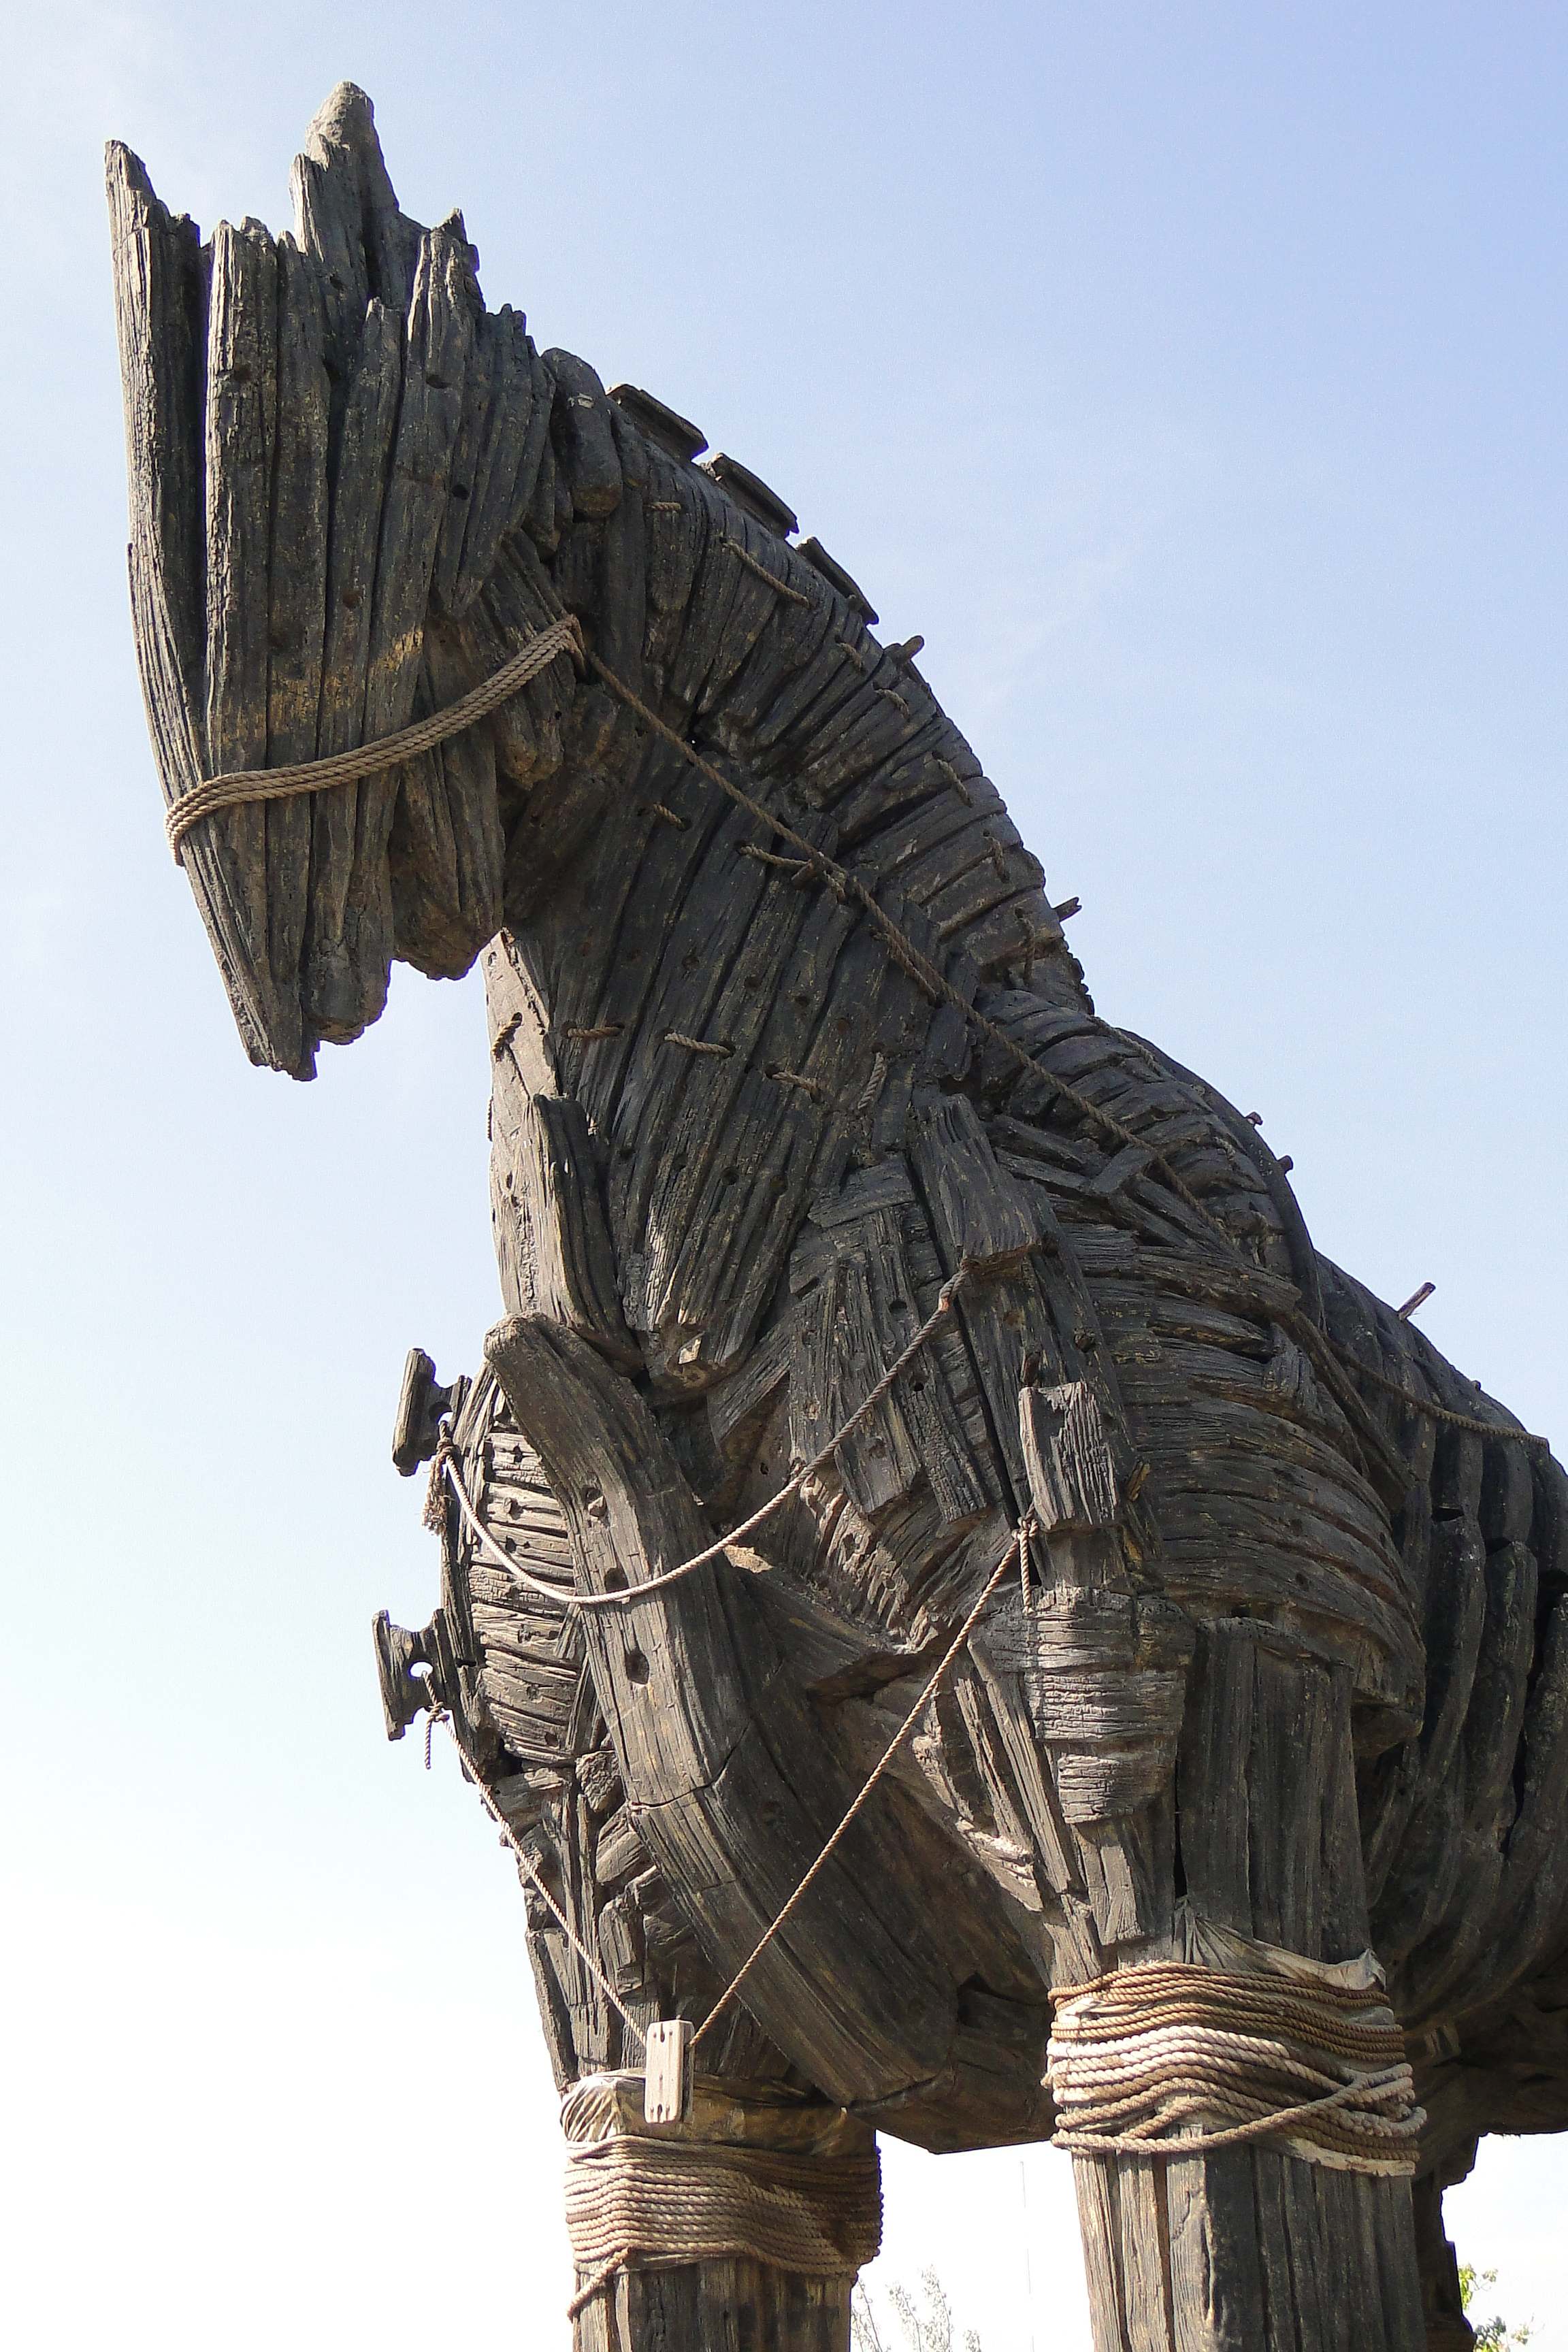 Trojan Horse Model School Project